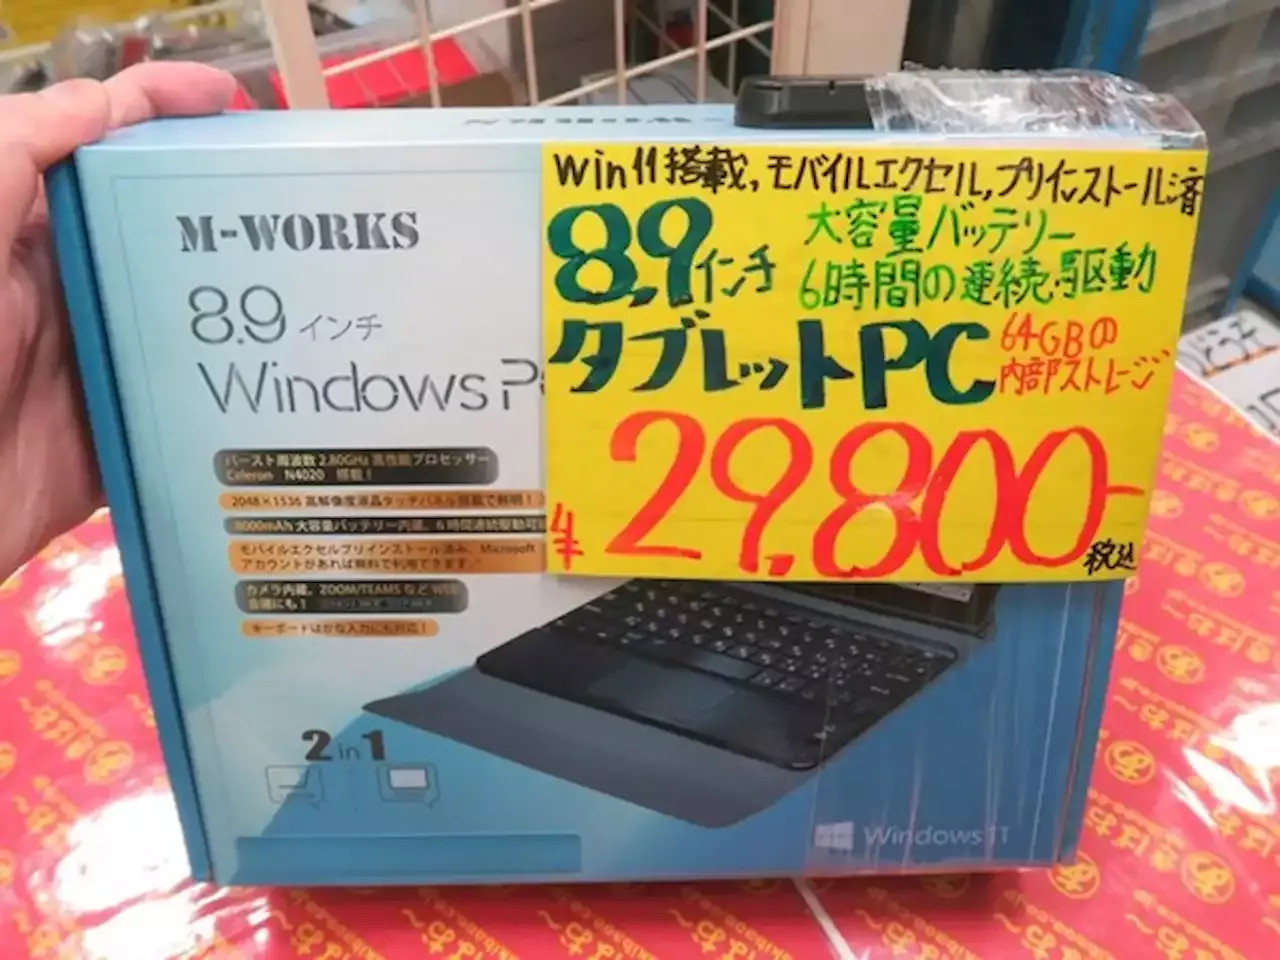 【新古品】M-WORKS 8.9タブレット MW-HDW8000 Win10最新